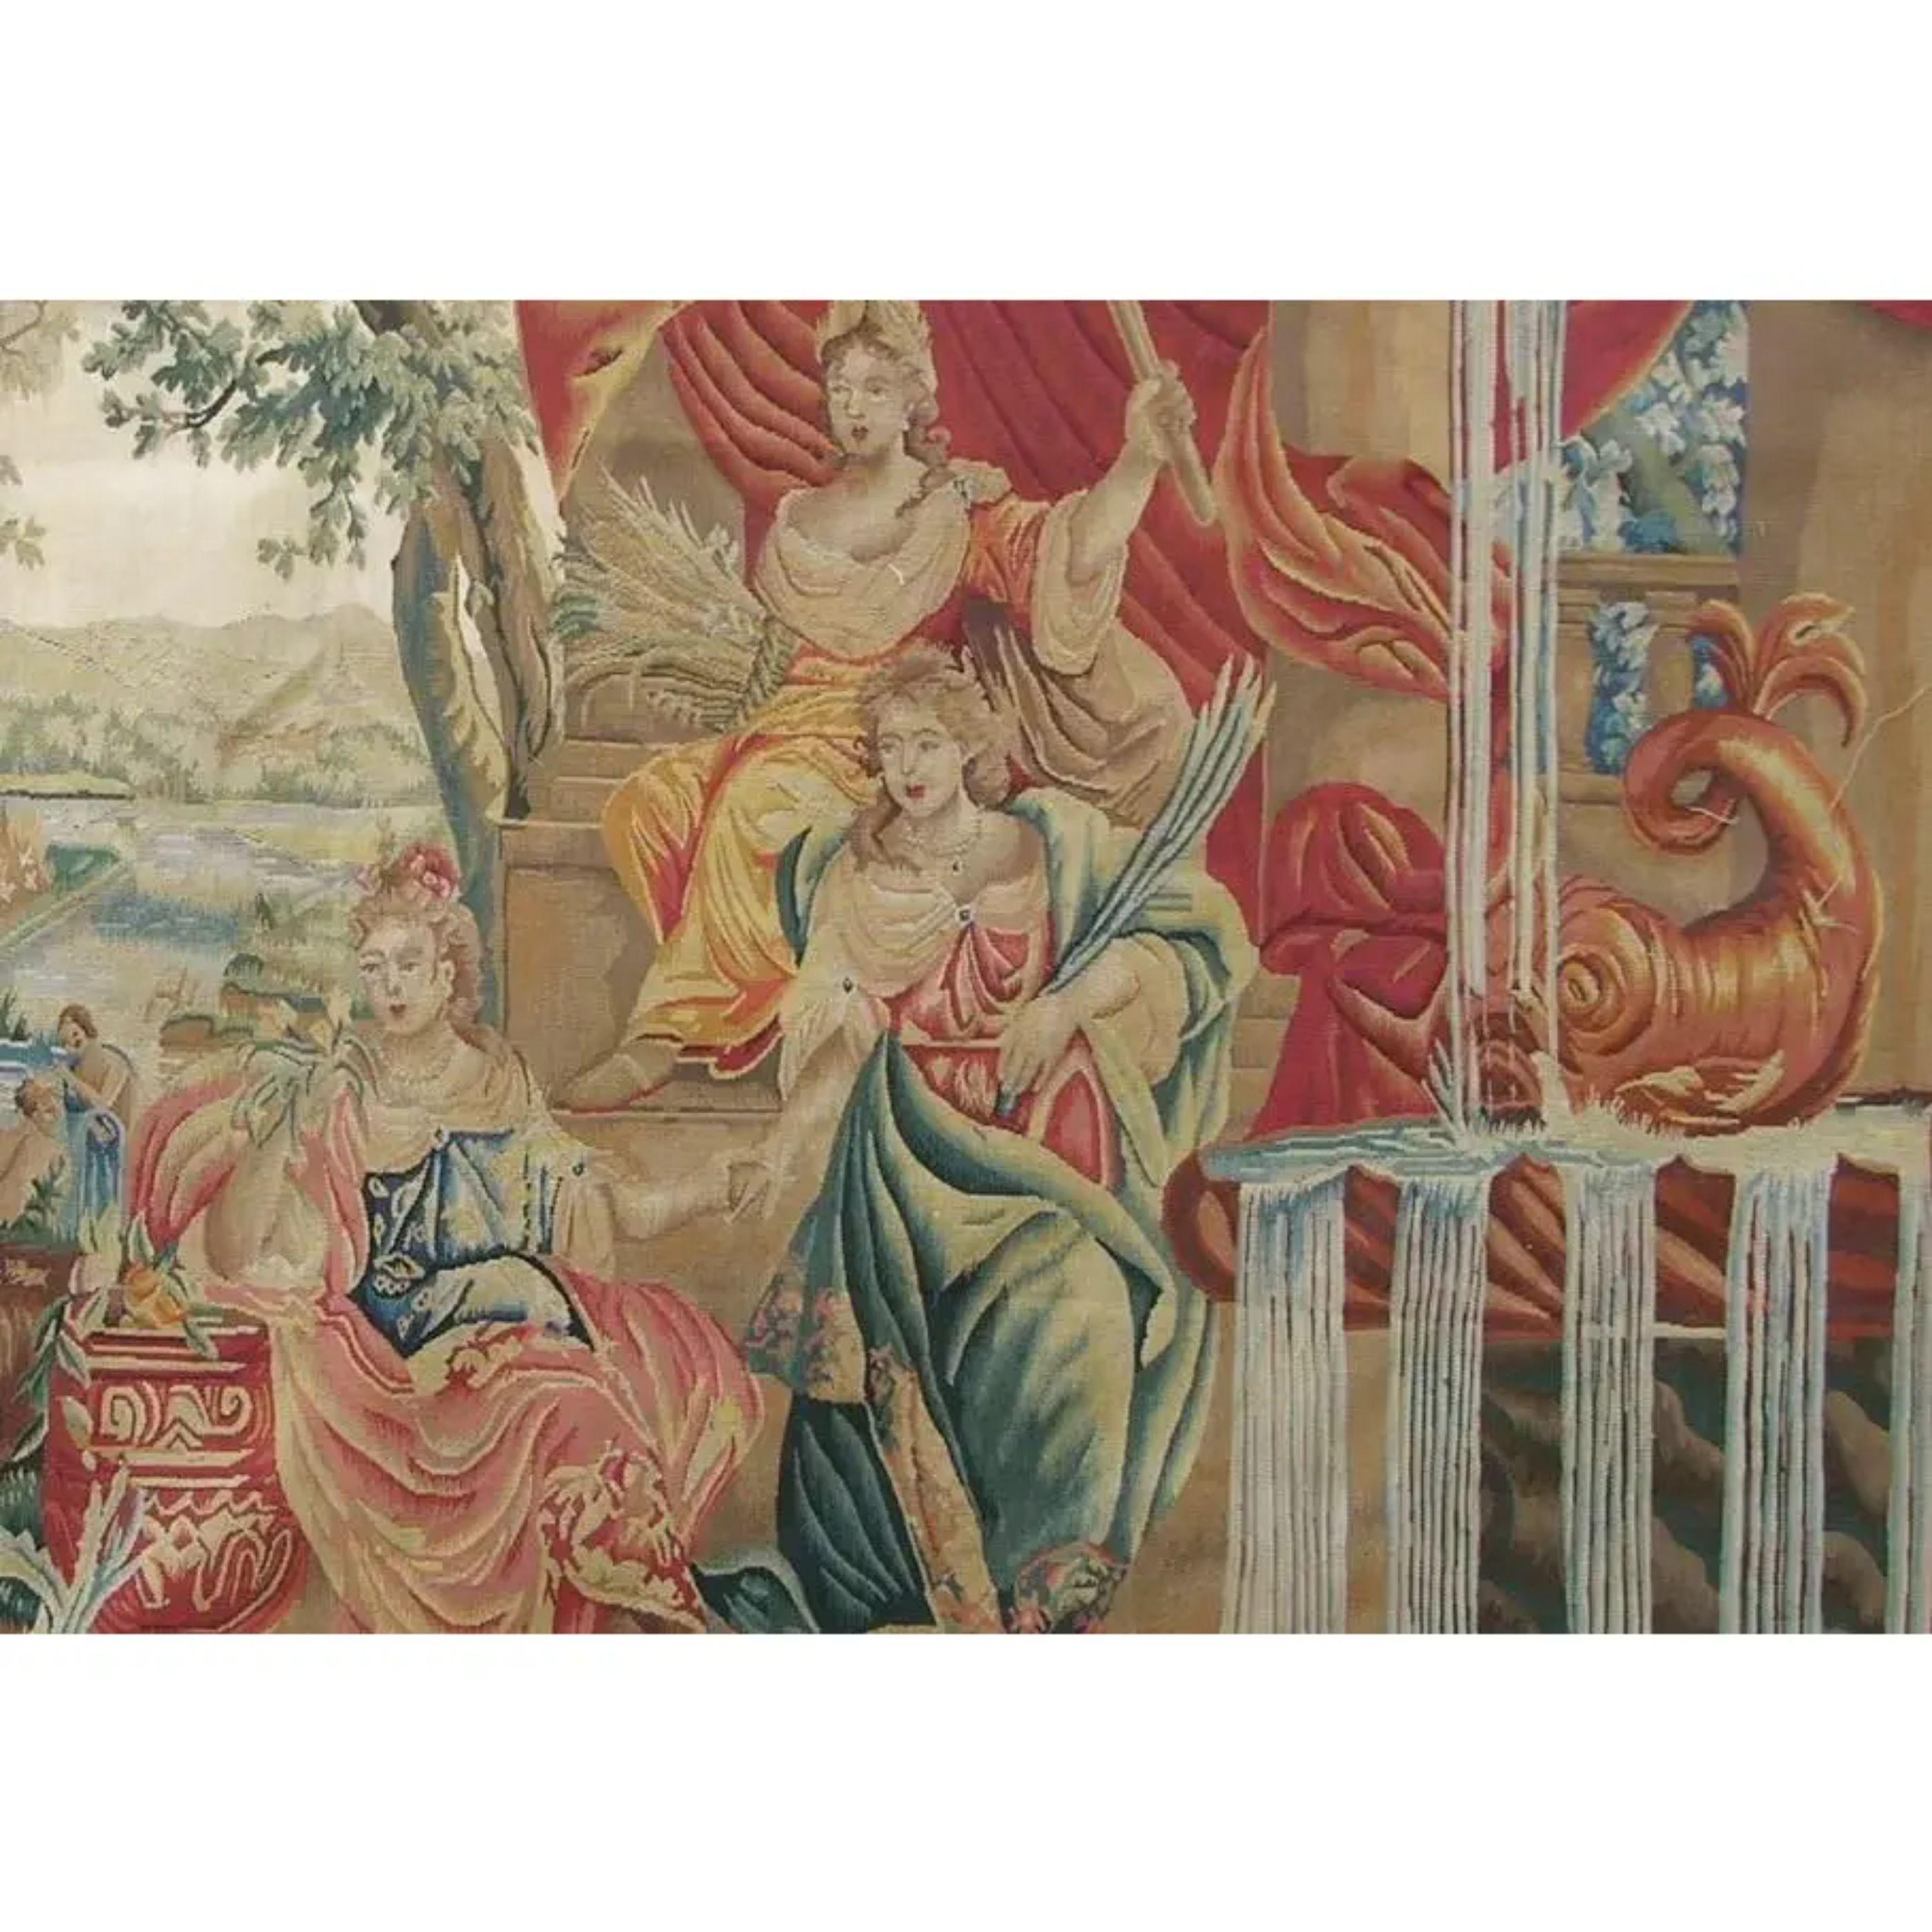 Ein Wandteppich ist, einfach ausgedrückt, ein Textil, das speziell entworfen und gewebt wurde, um eine künstlerische Szene darzustellen, die an einer Wand aufgehängt werden soll. Antike Wandteppiche, die vor mehr als 100 Jahren gewebt wurden, sind